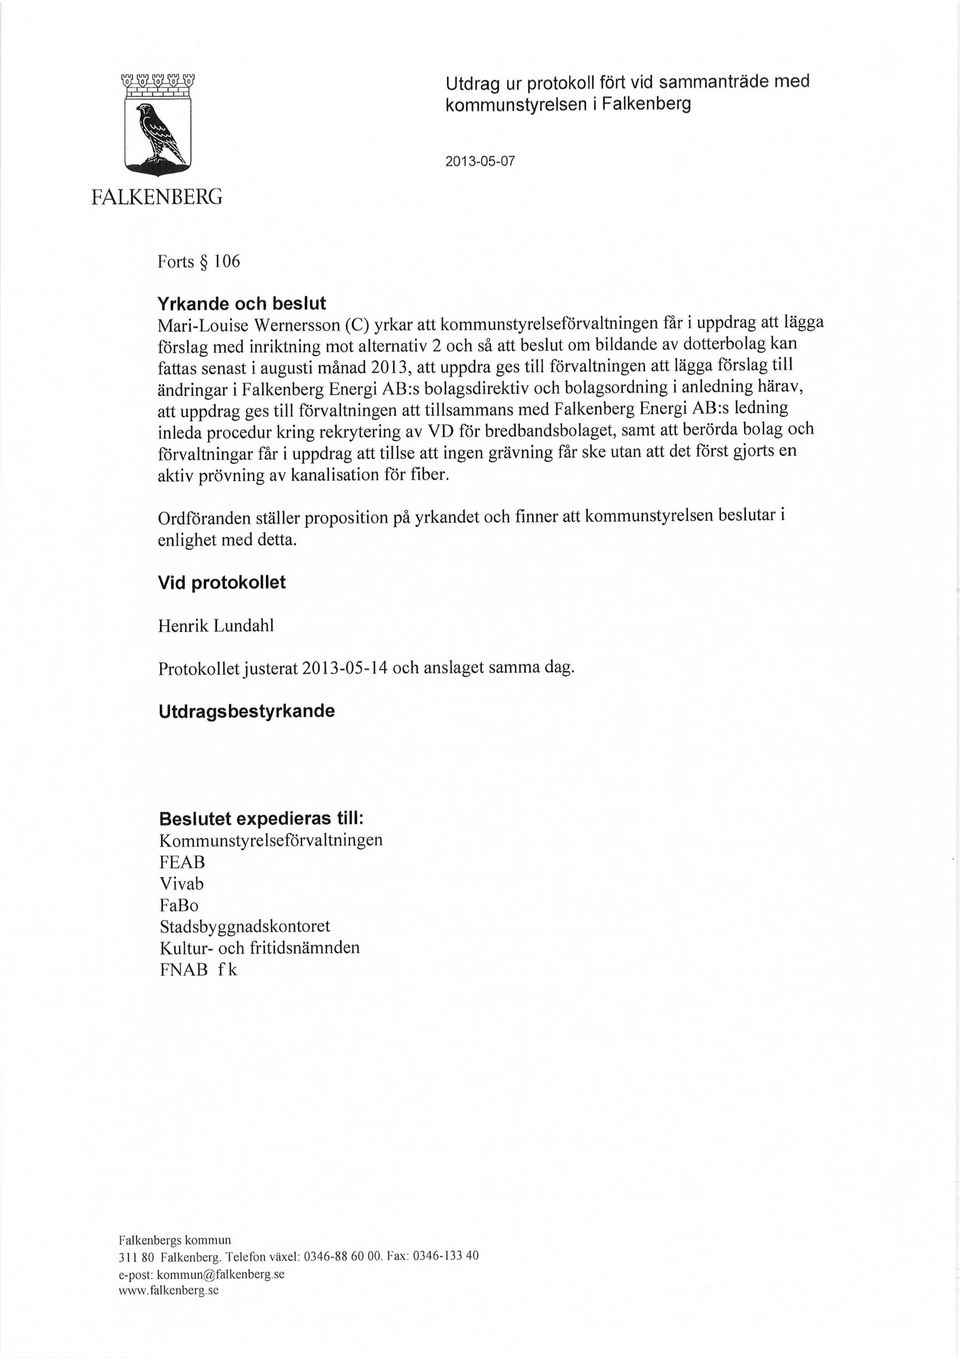 ändringar i Falkenberg Energi AB:s bolagsdirektiv och bolagsordning i anledning härav, att uppdrag ges till förvaltningen att tillsammans med Falkenberg Energi AB:s ledning inleda procedur kring